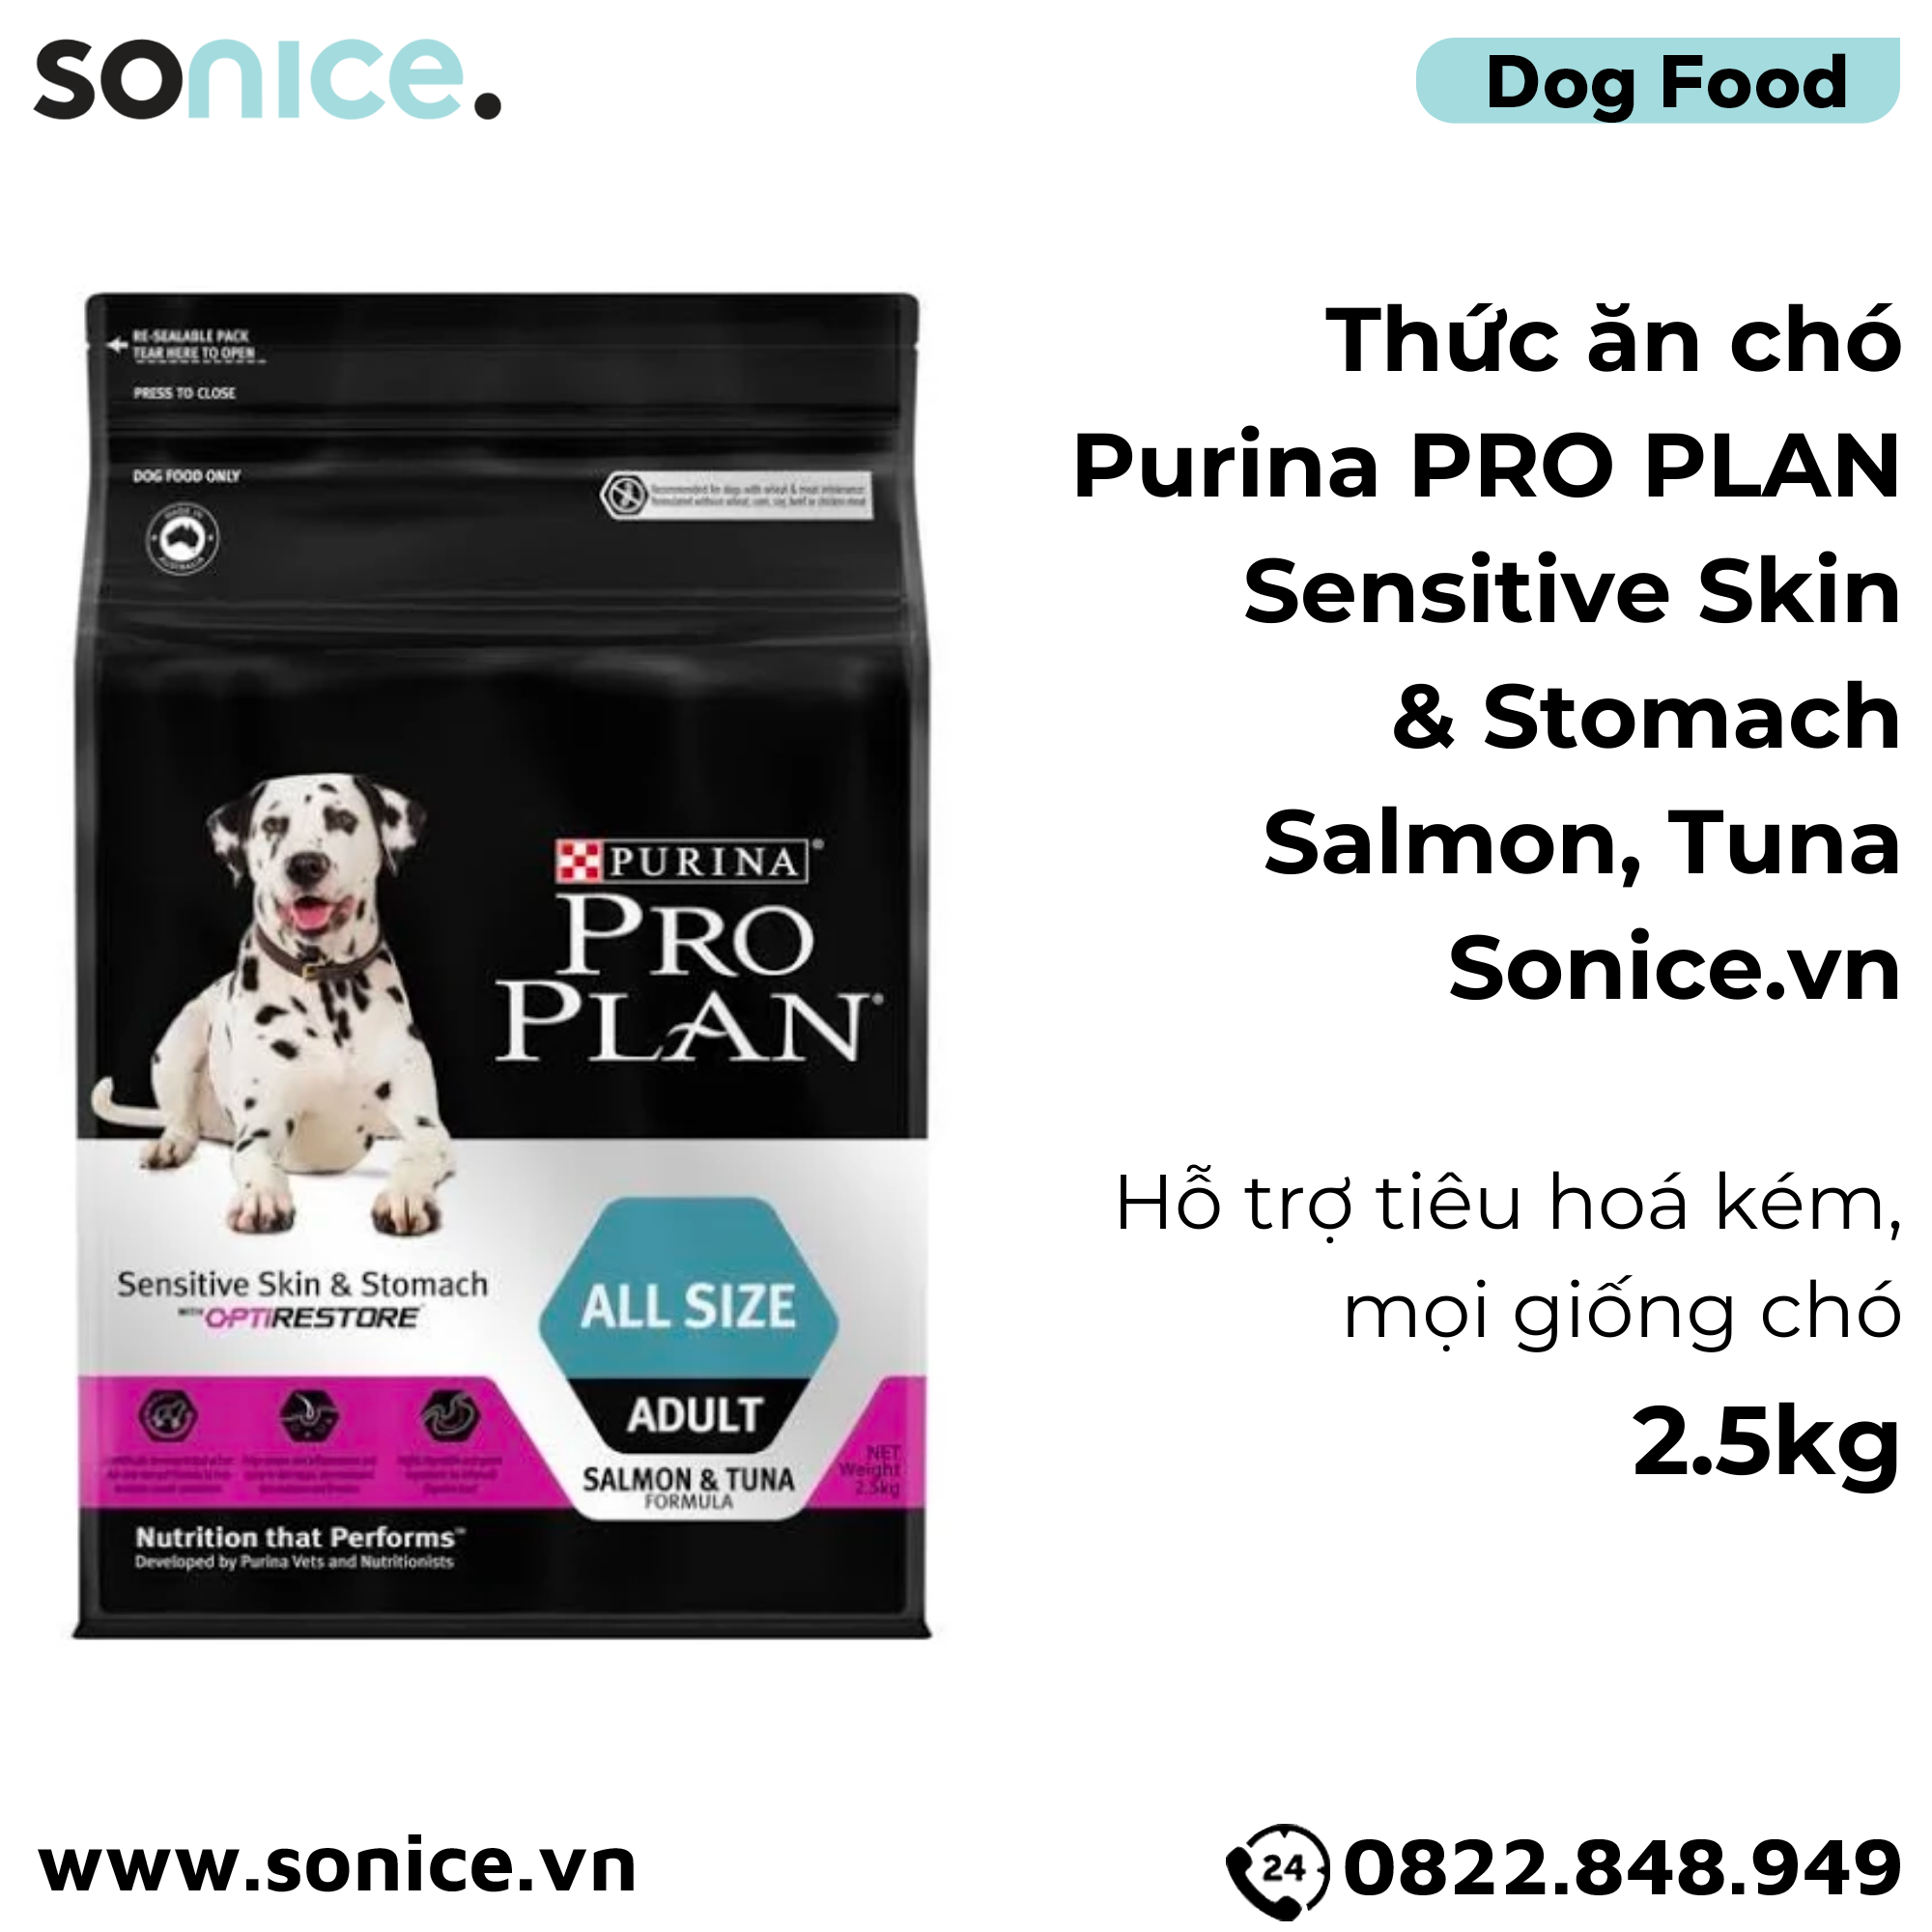  Thức ăn chó Purina PRO PLAN Sensitive Skin & Stomach Salmon, Tuna 2.5kg - Hỗ trợ tiêu hoá kém, mọi giống chó SONICE. 